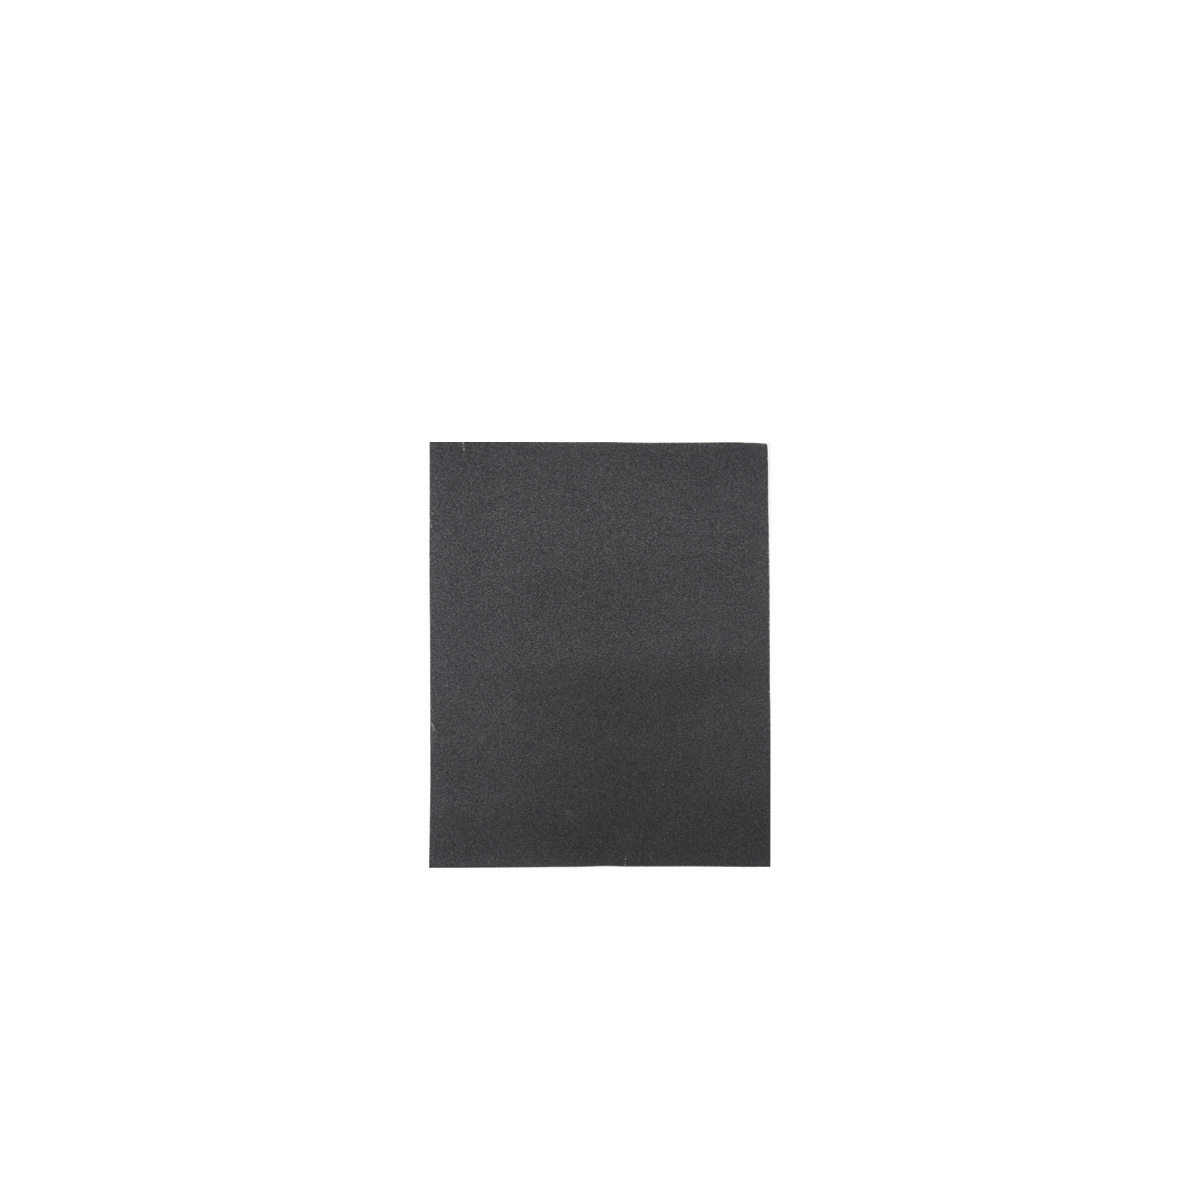 Лист шлифовальный Кедр, P 800, 230 x 280 мм, водостойкий,  бумага, 10 шт водостойкий универсальный шлифовальный лист зубр